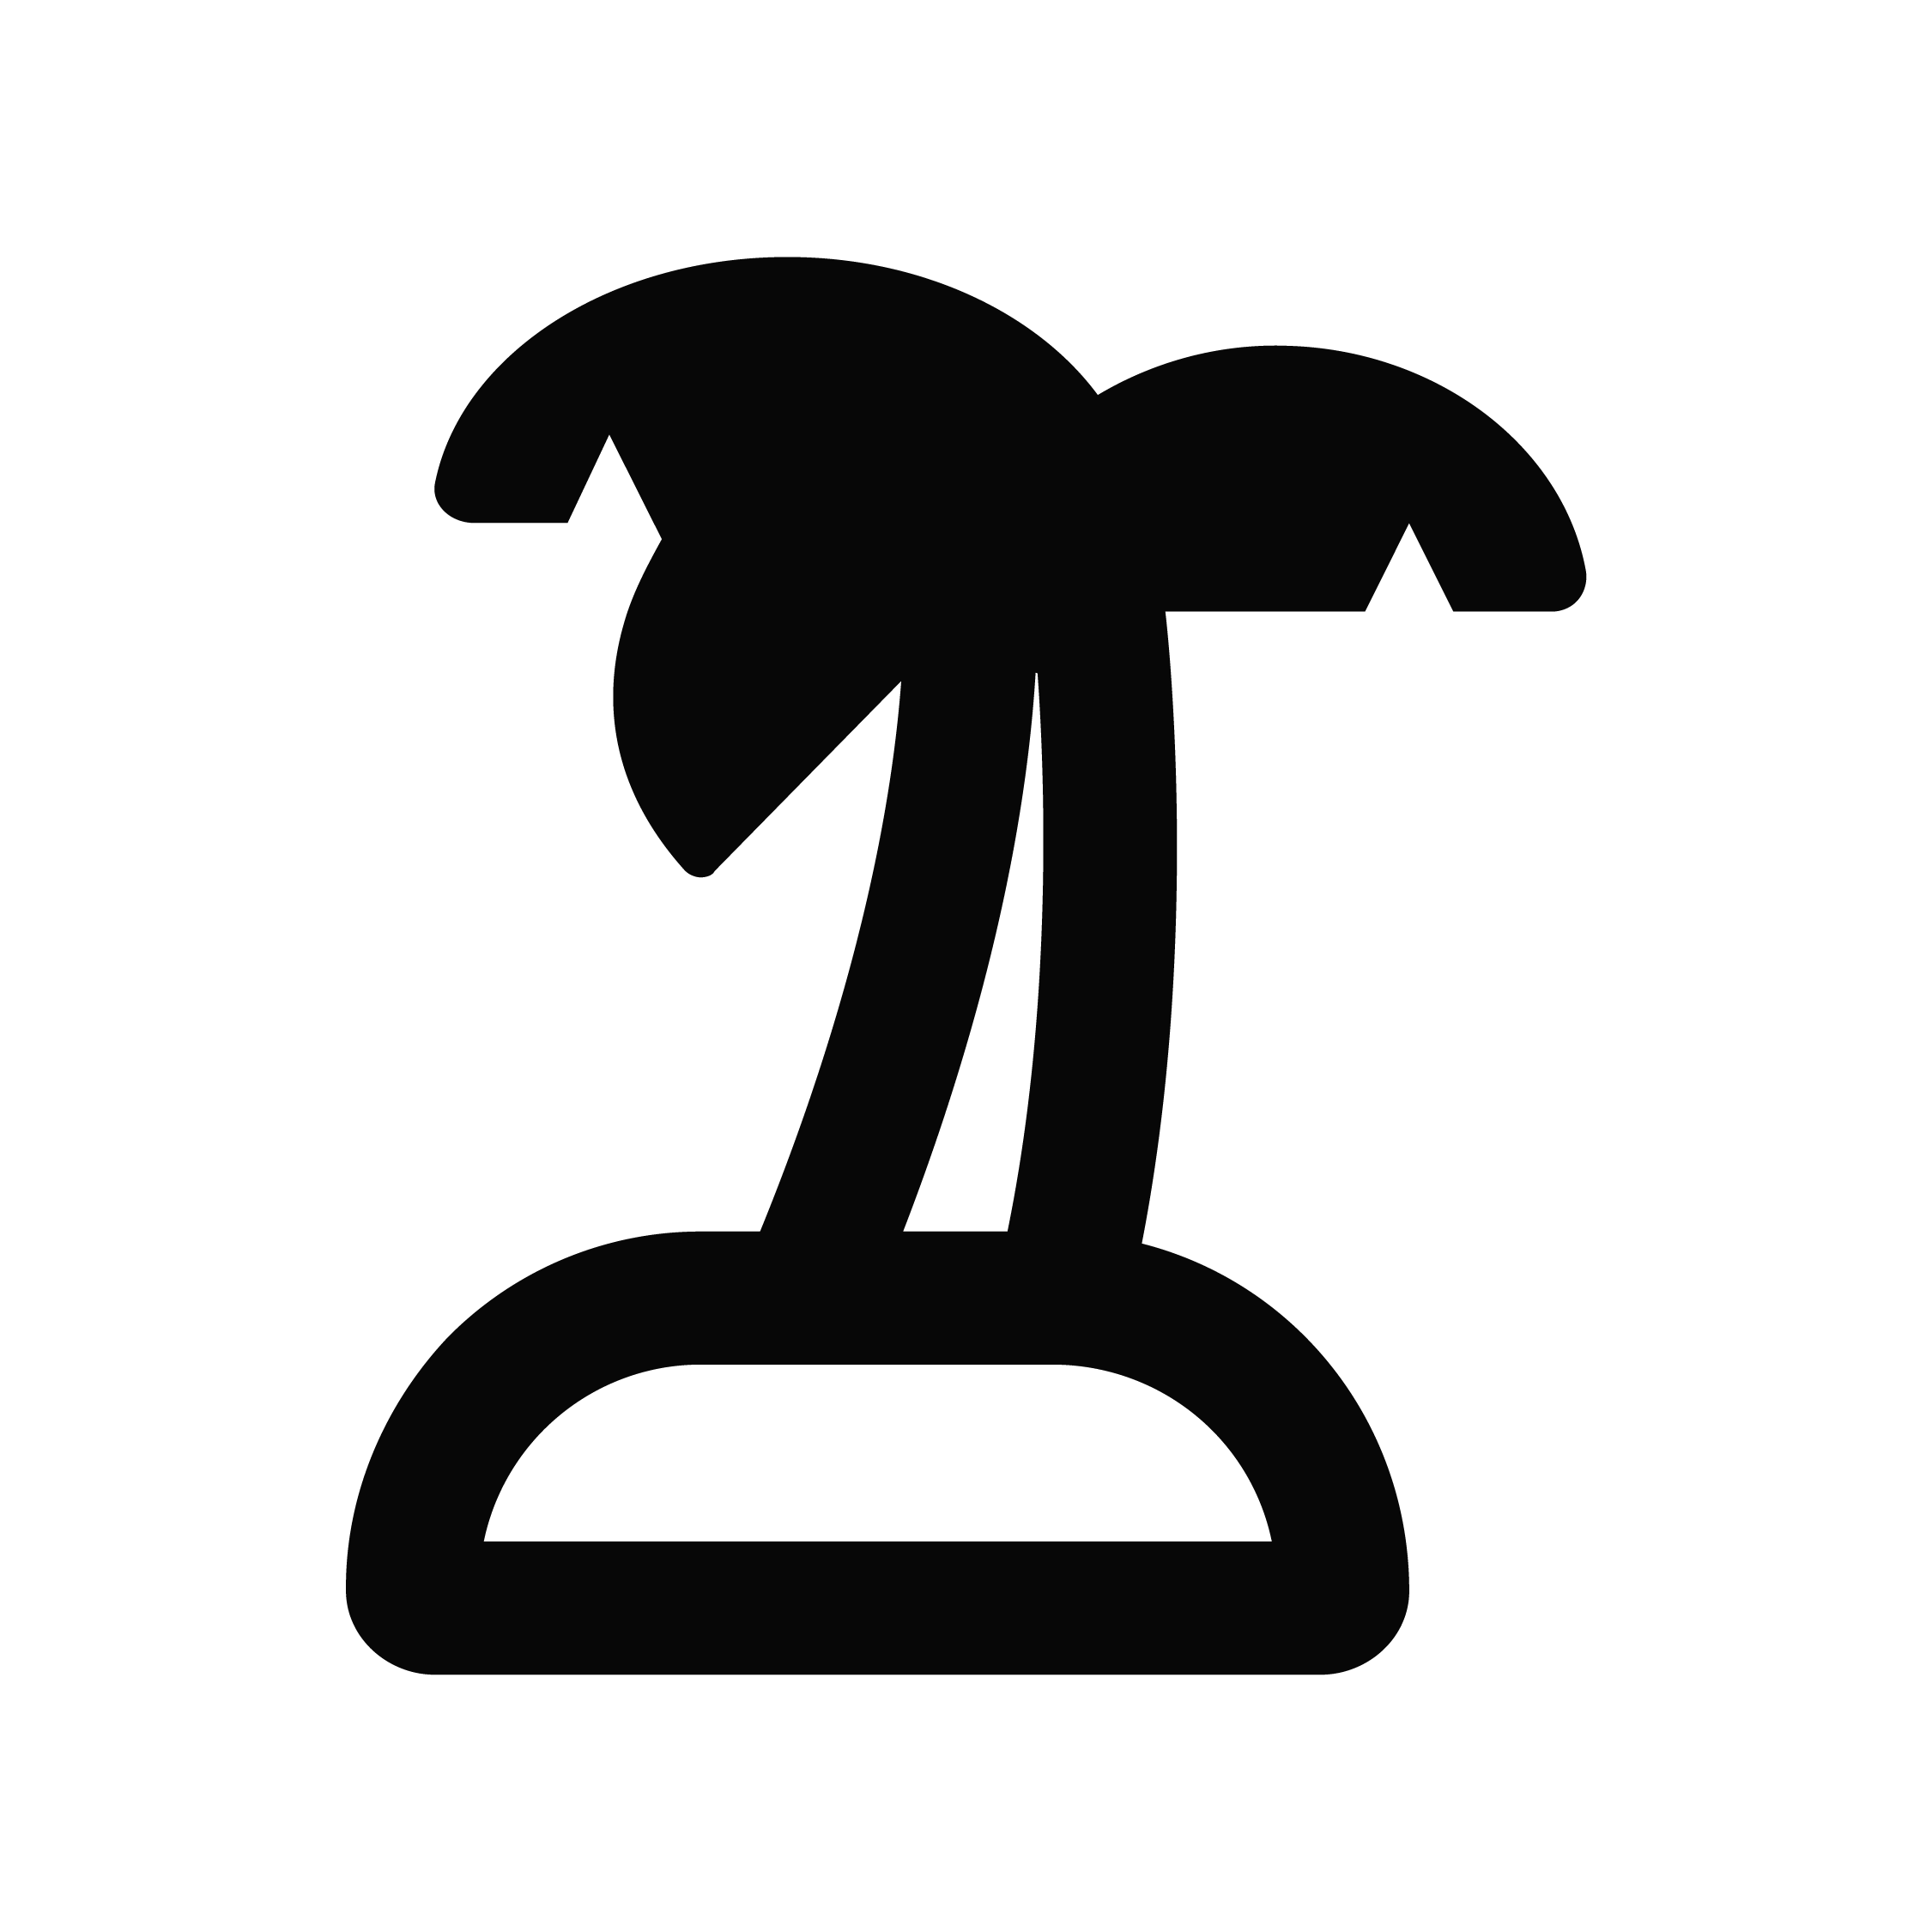 Palm tree on an island